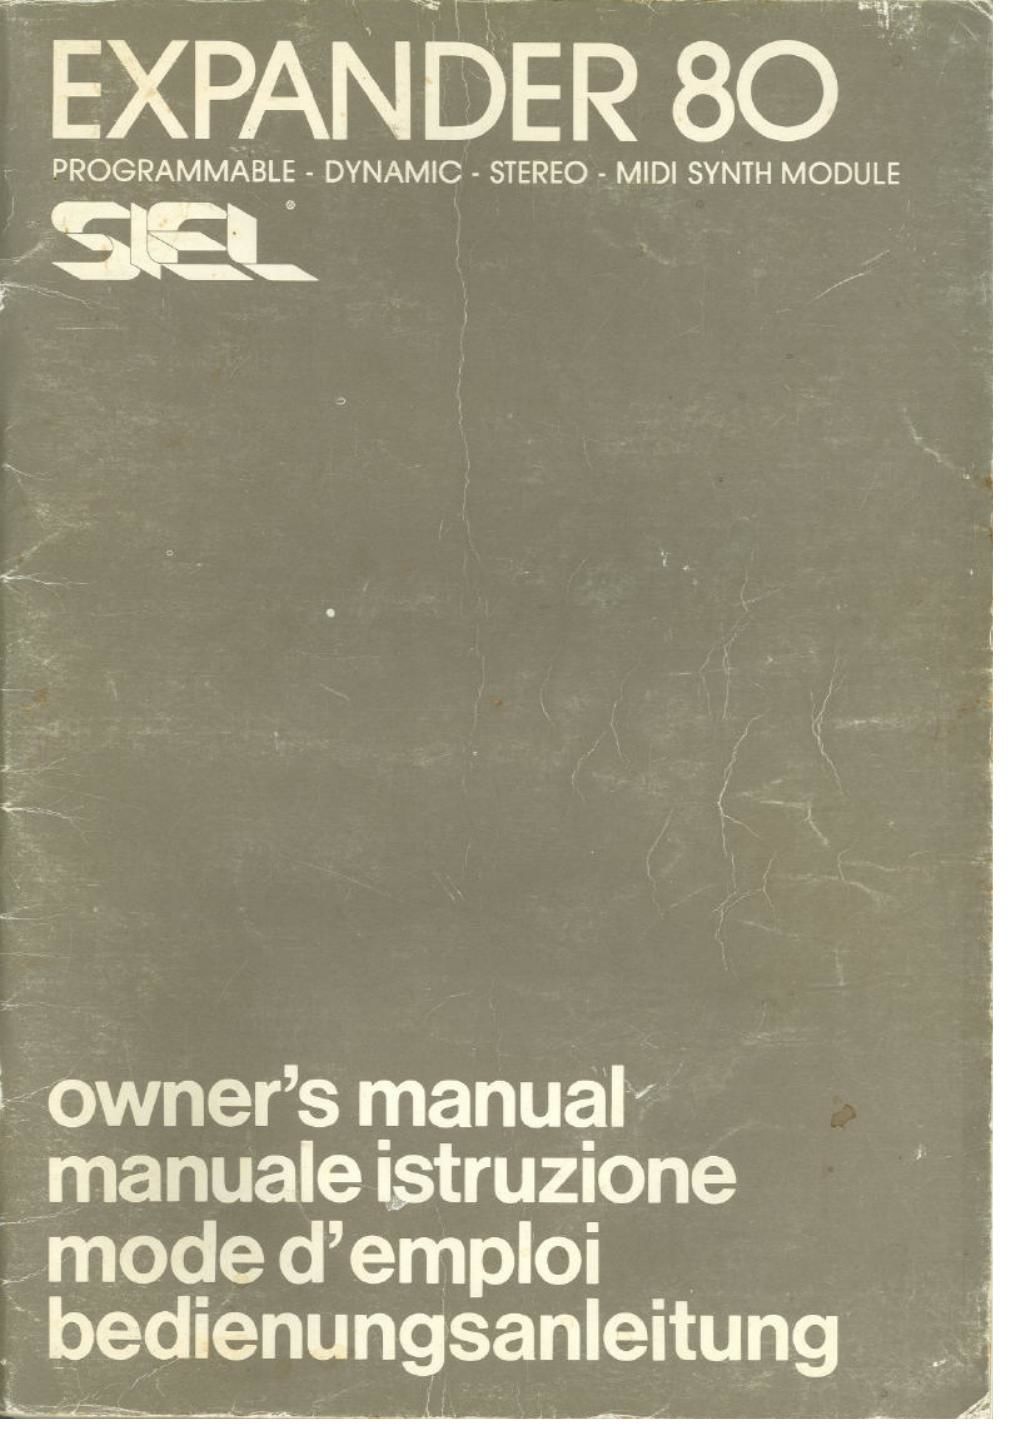 Siel expander 80 owners manual